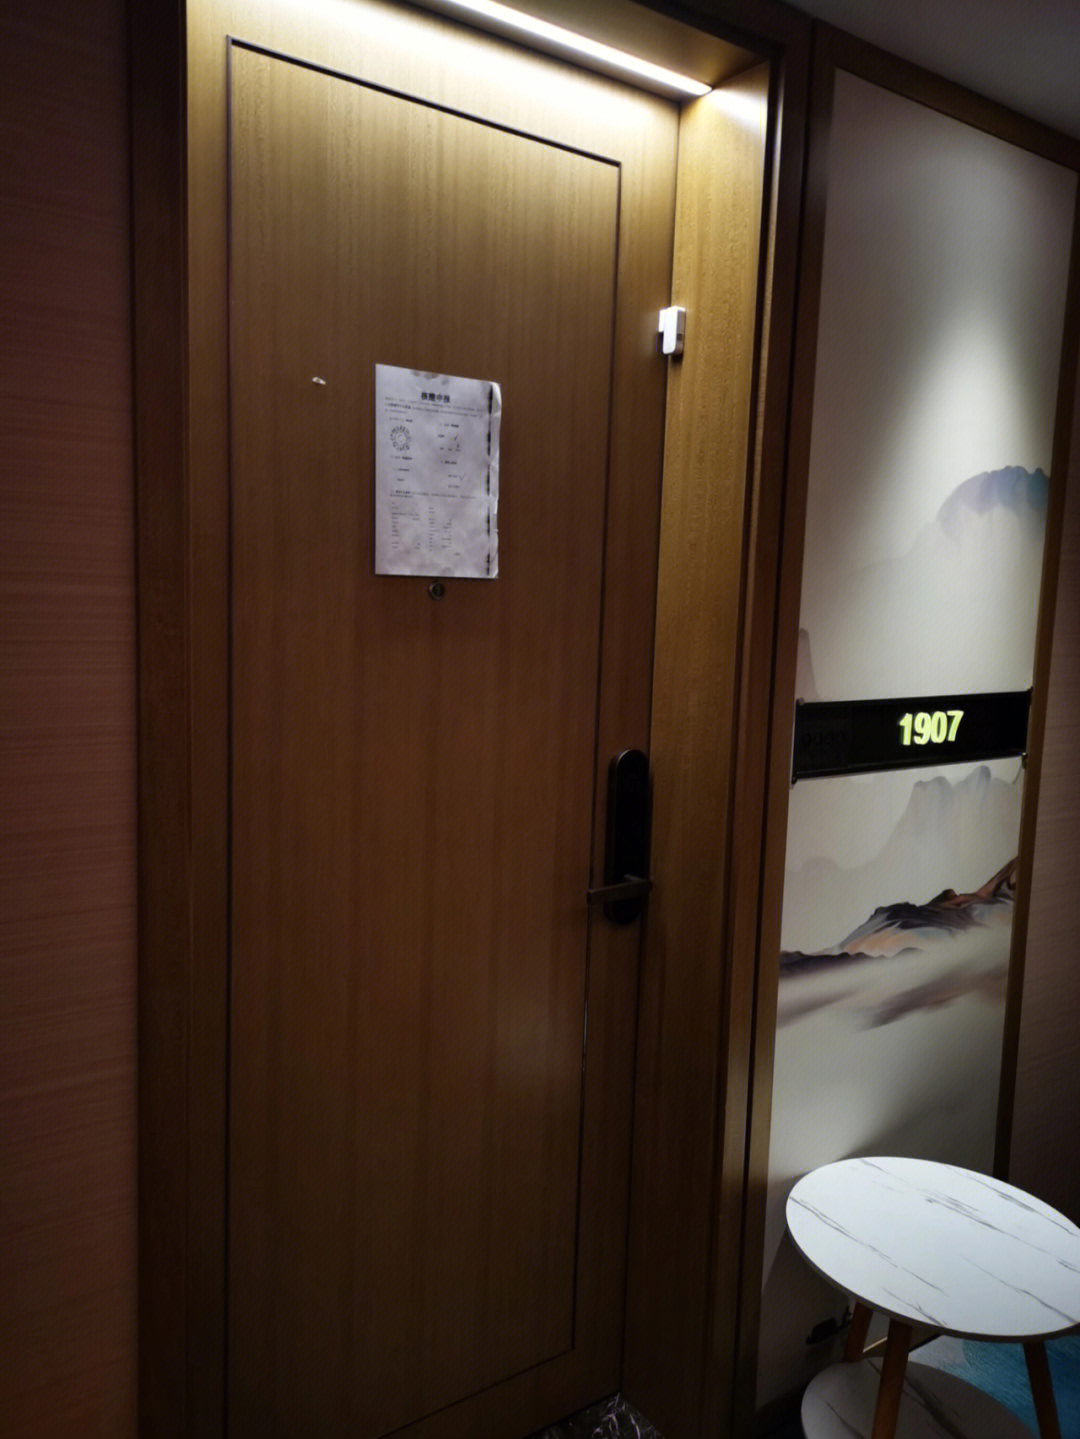 西安瑾程酒店隔离条件图片